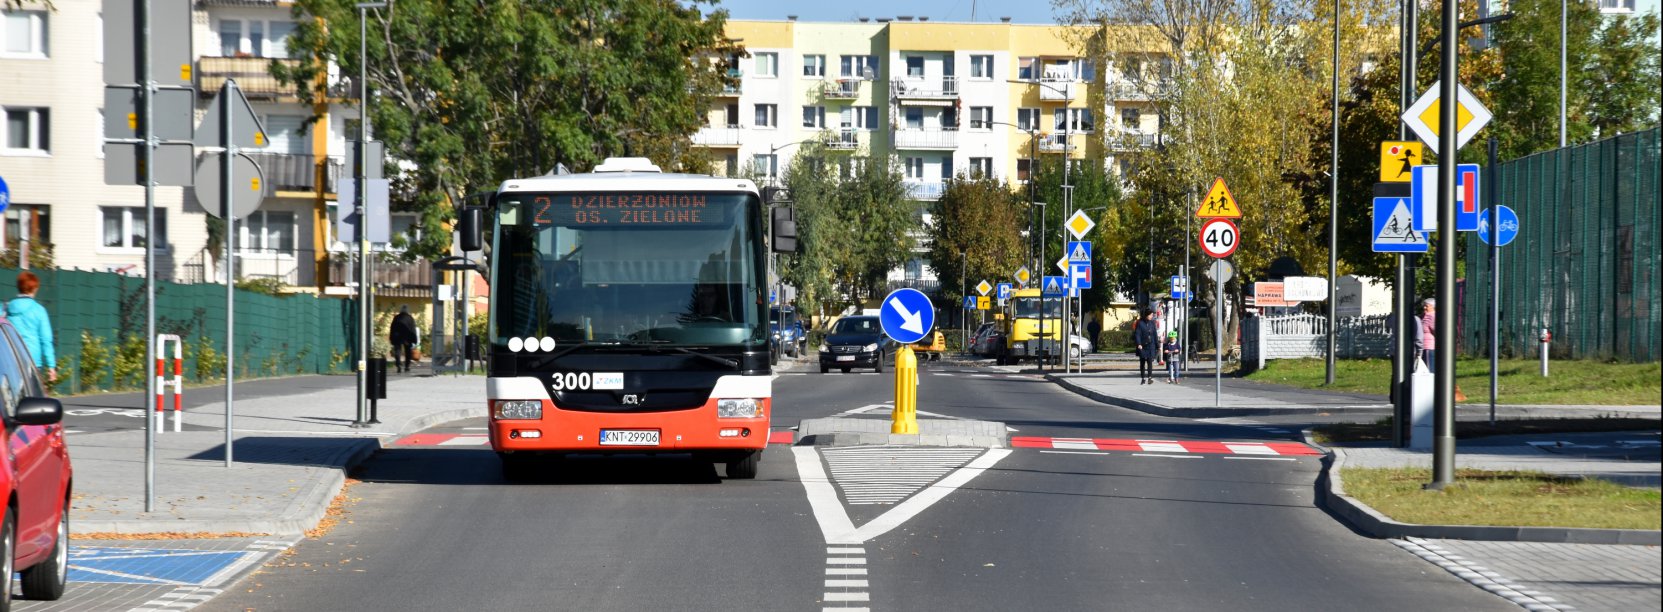 Autobus komunikacji miejskiej jadący osiedlową drogą